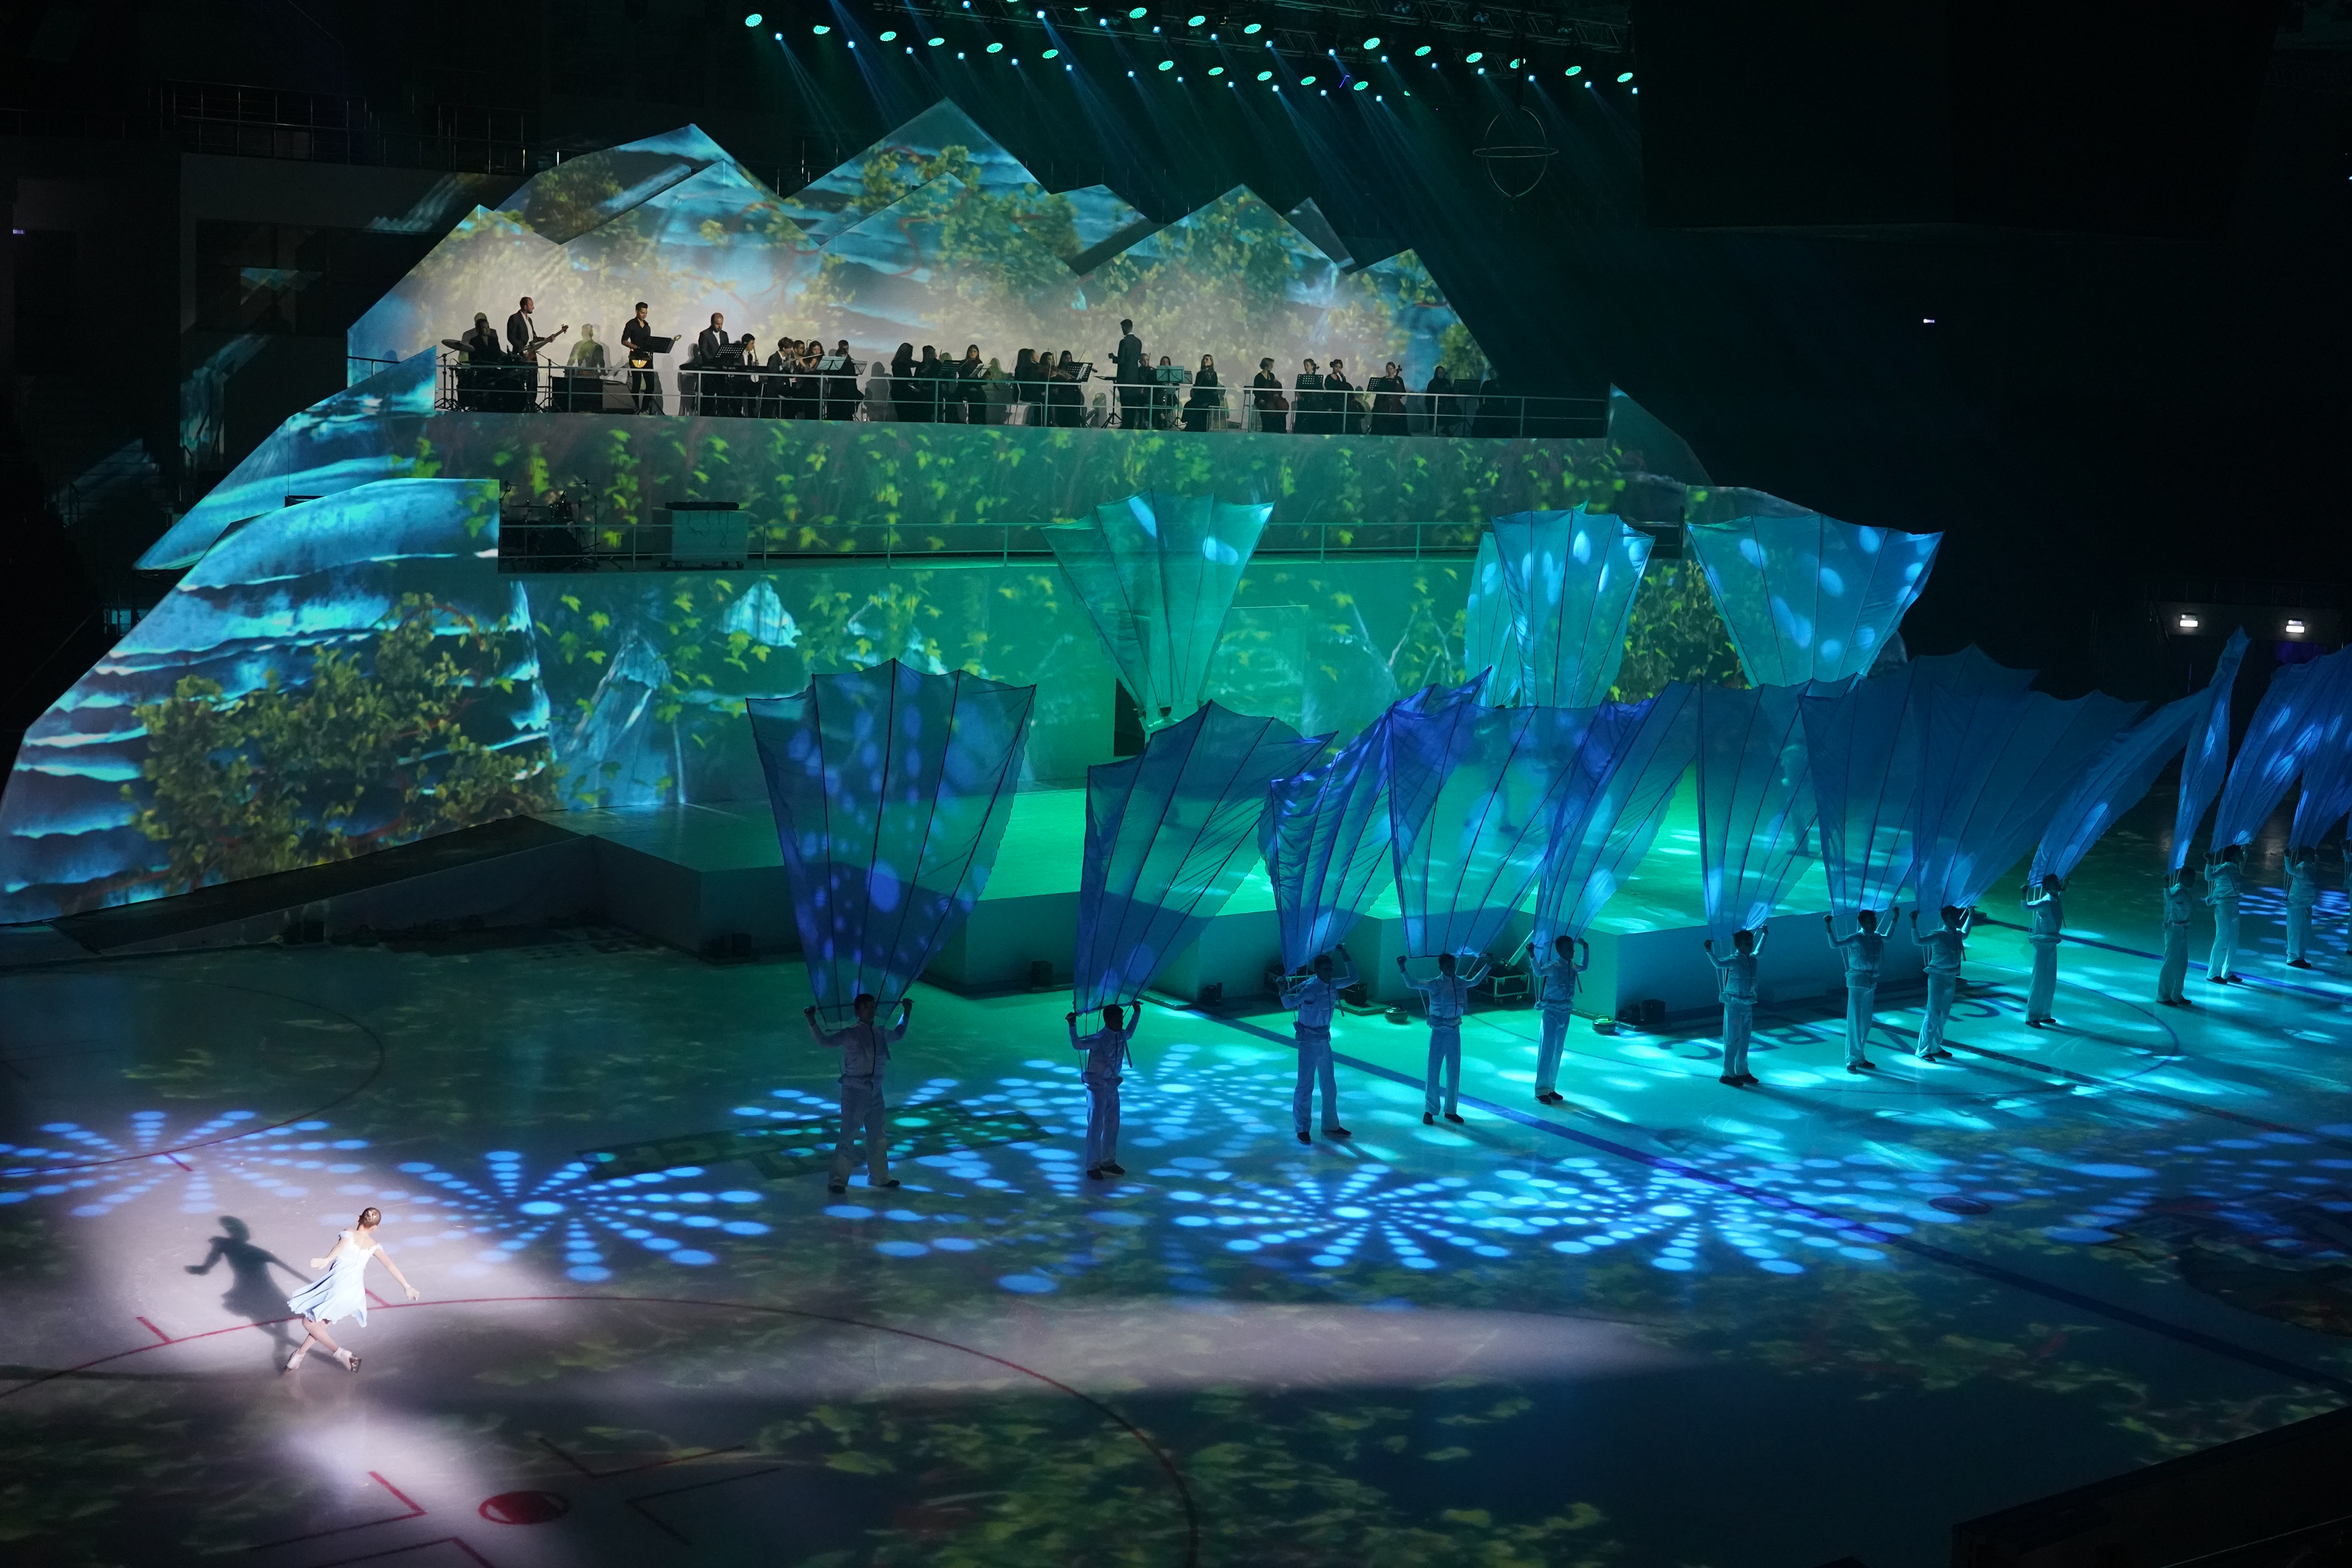 Ледовое шоу в дворце спорта самара